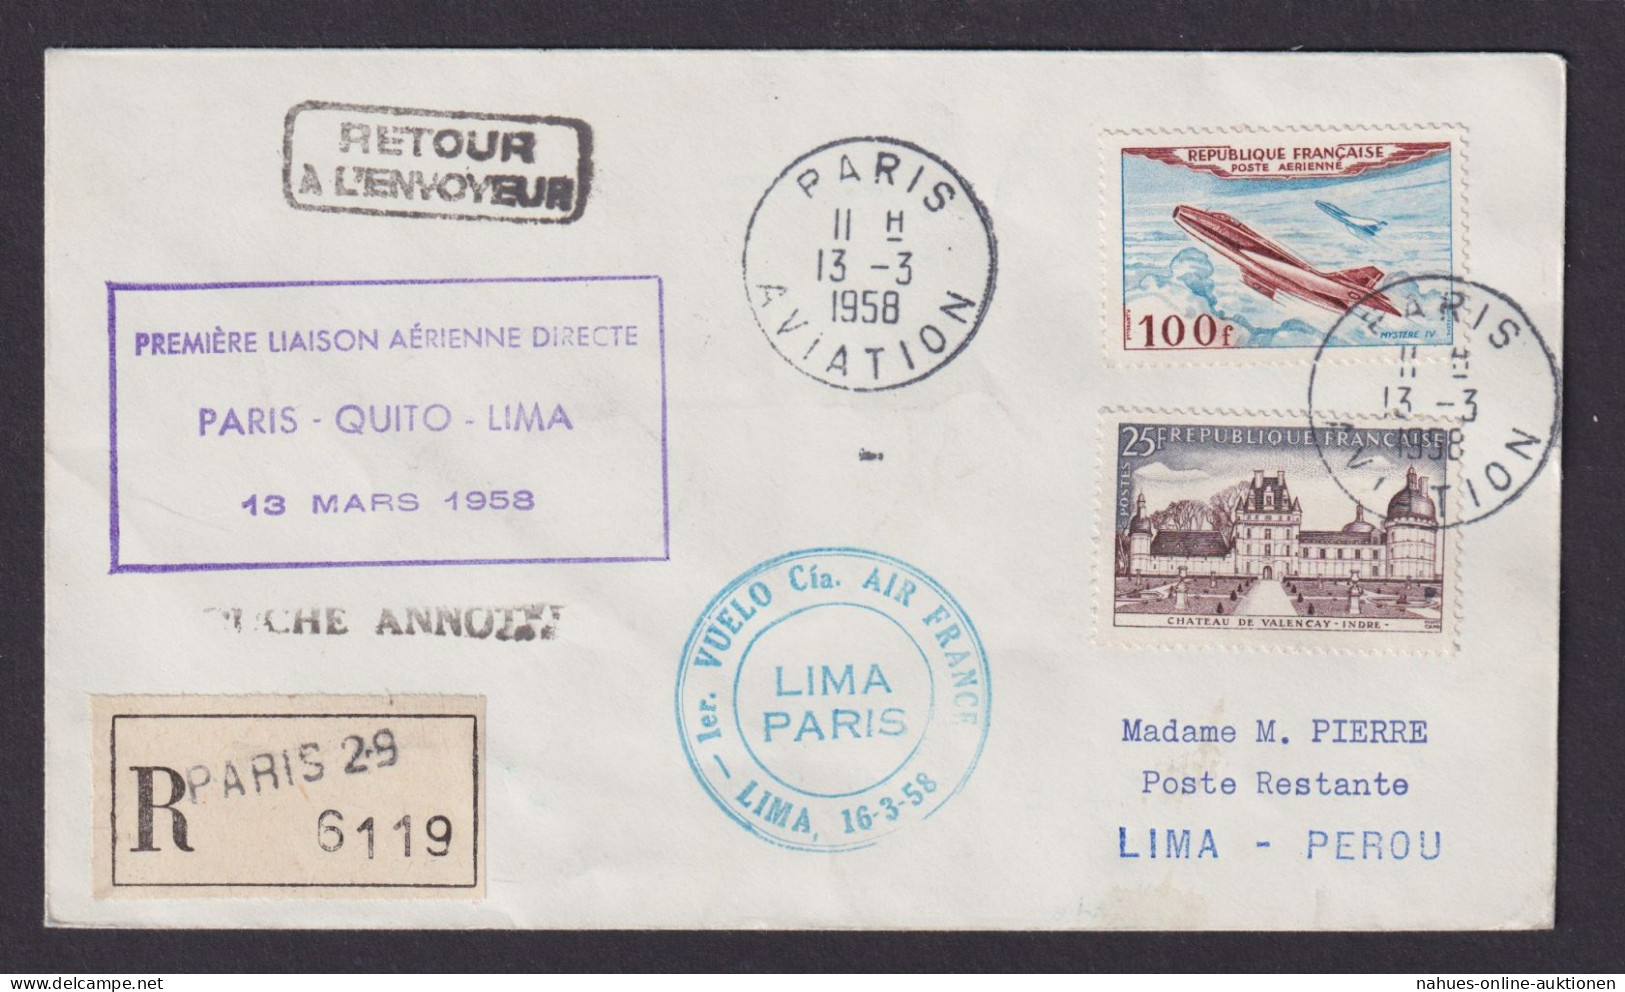 Flugpost R Brief Air Mail Air France Erstflug Paris Quito Lima Peru 13.3.1958 - Briefe U. Dokumente